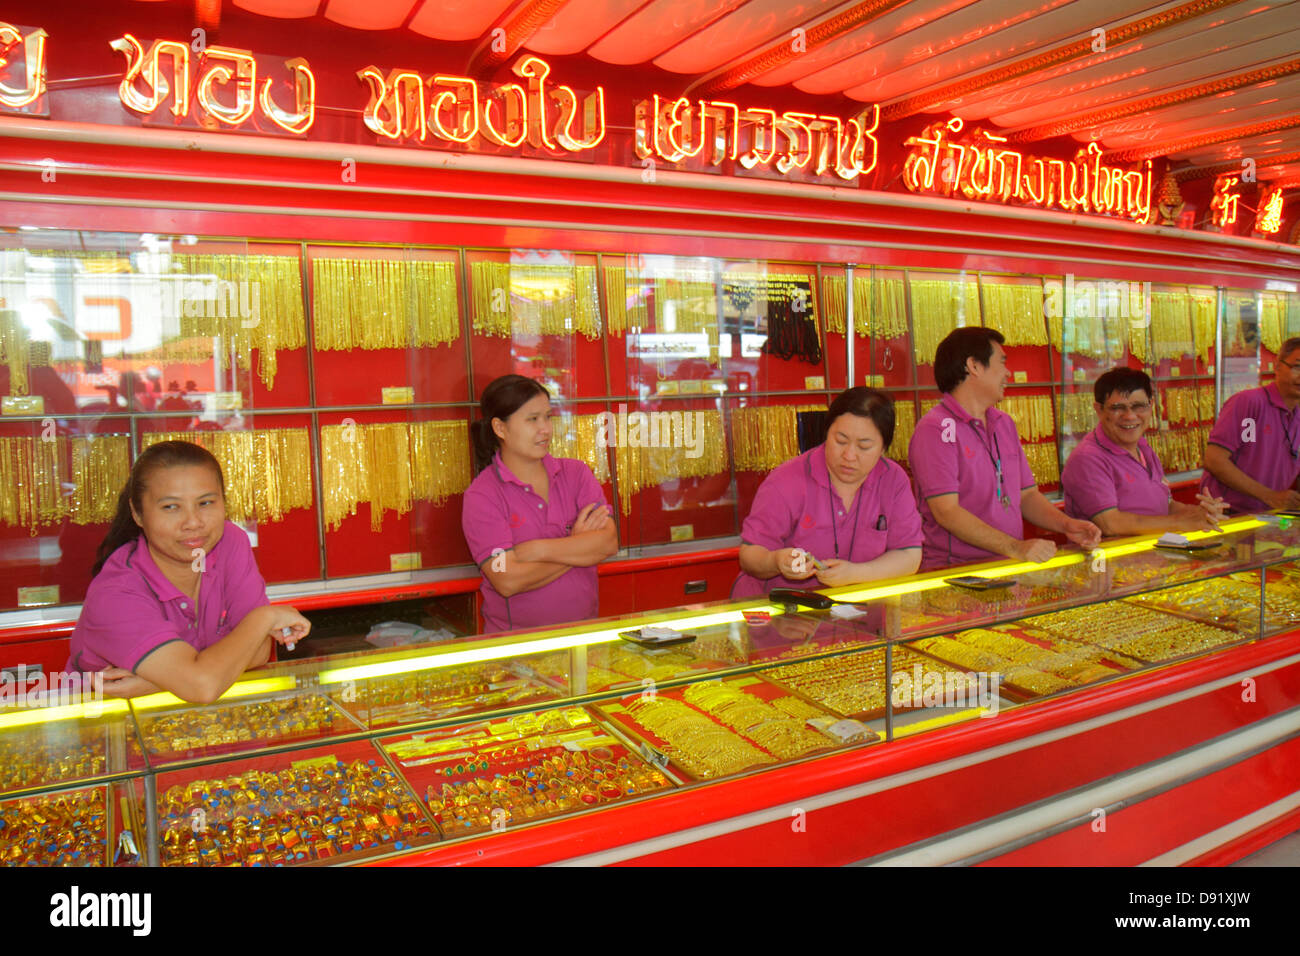 Negozio d'oro tailandia immagini e fotografie stock ad alta risoluzione -  Alamy